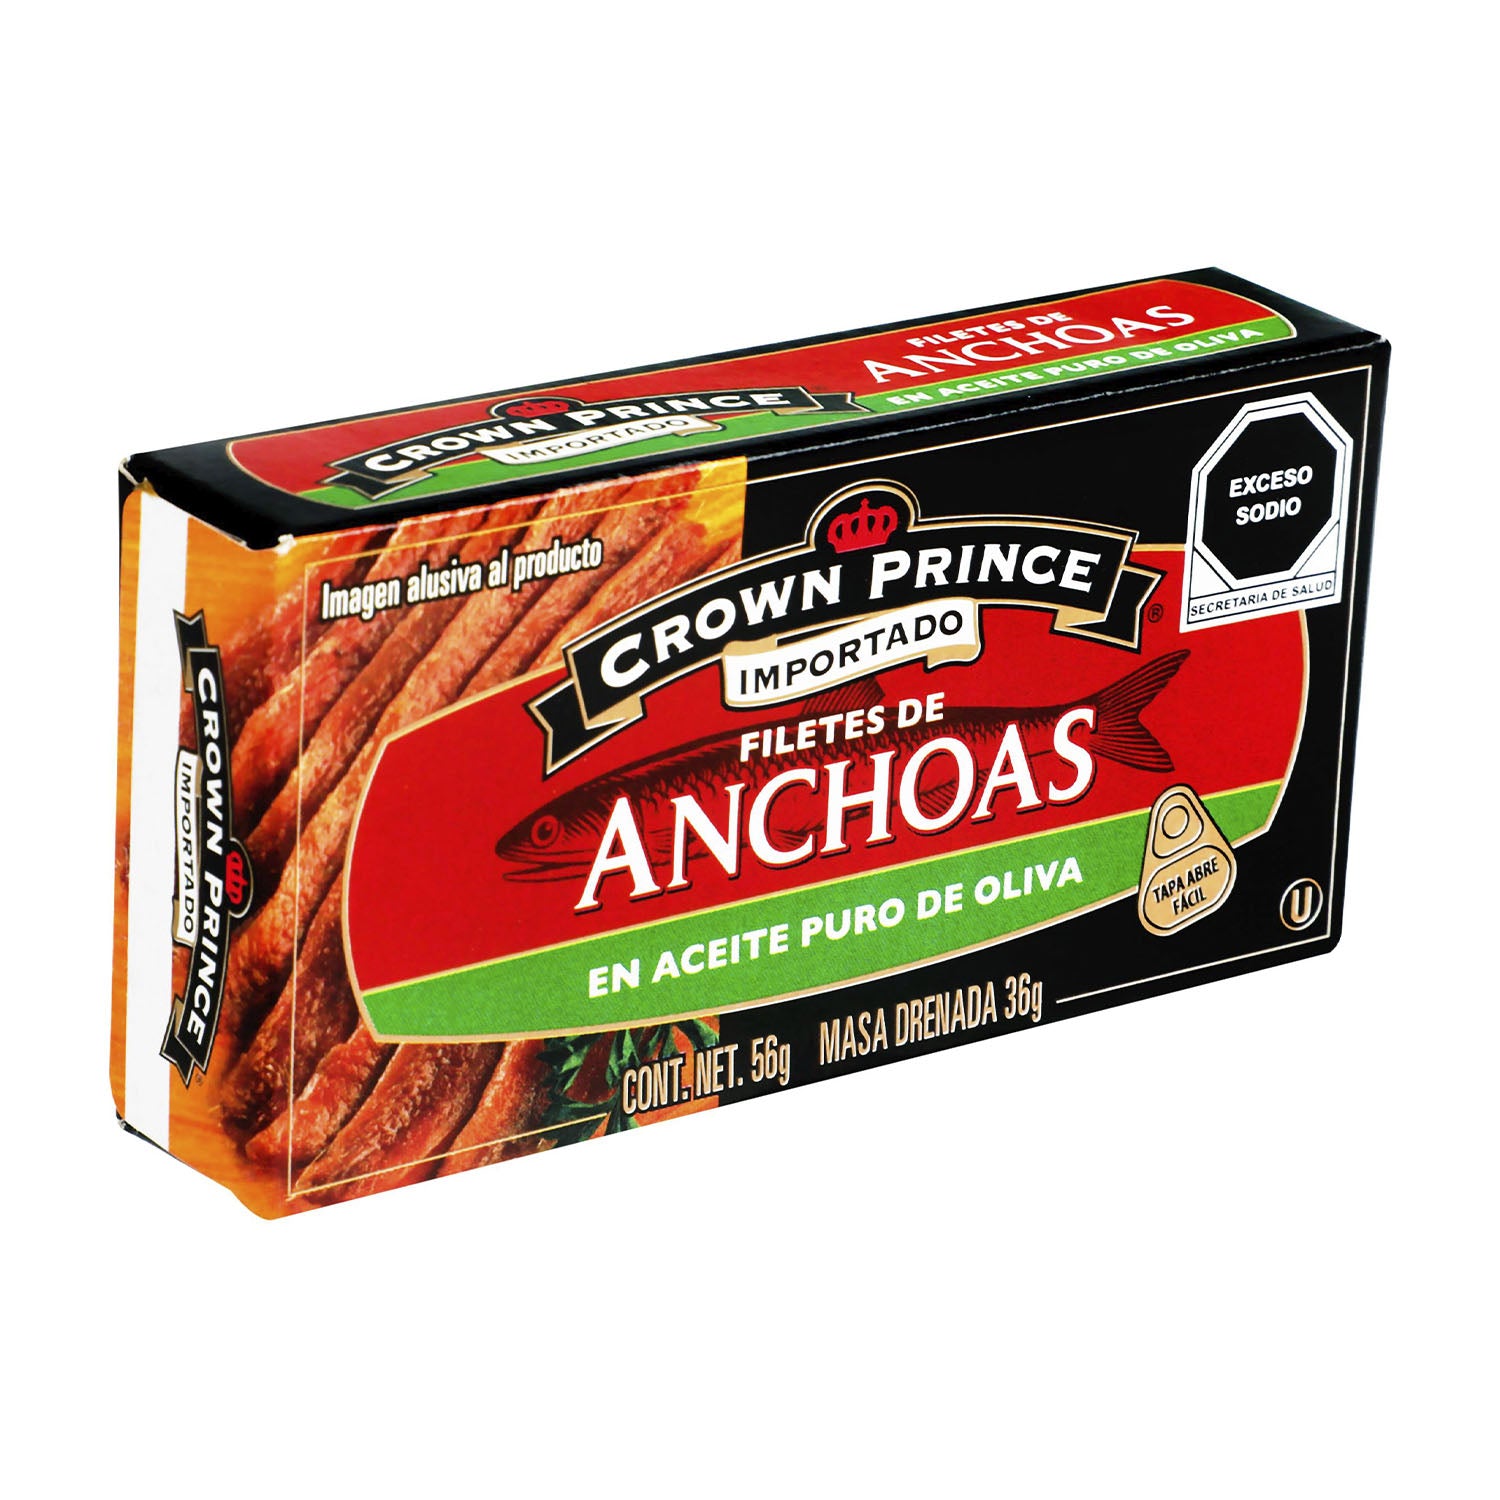 Crown Prince - Filete de Anchoas en Aceite Puro -  Oliva 56 gr